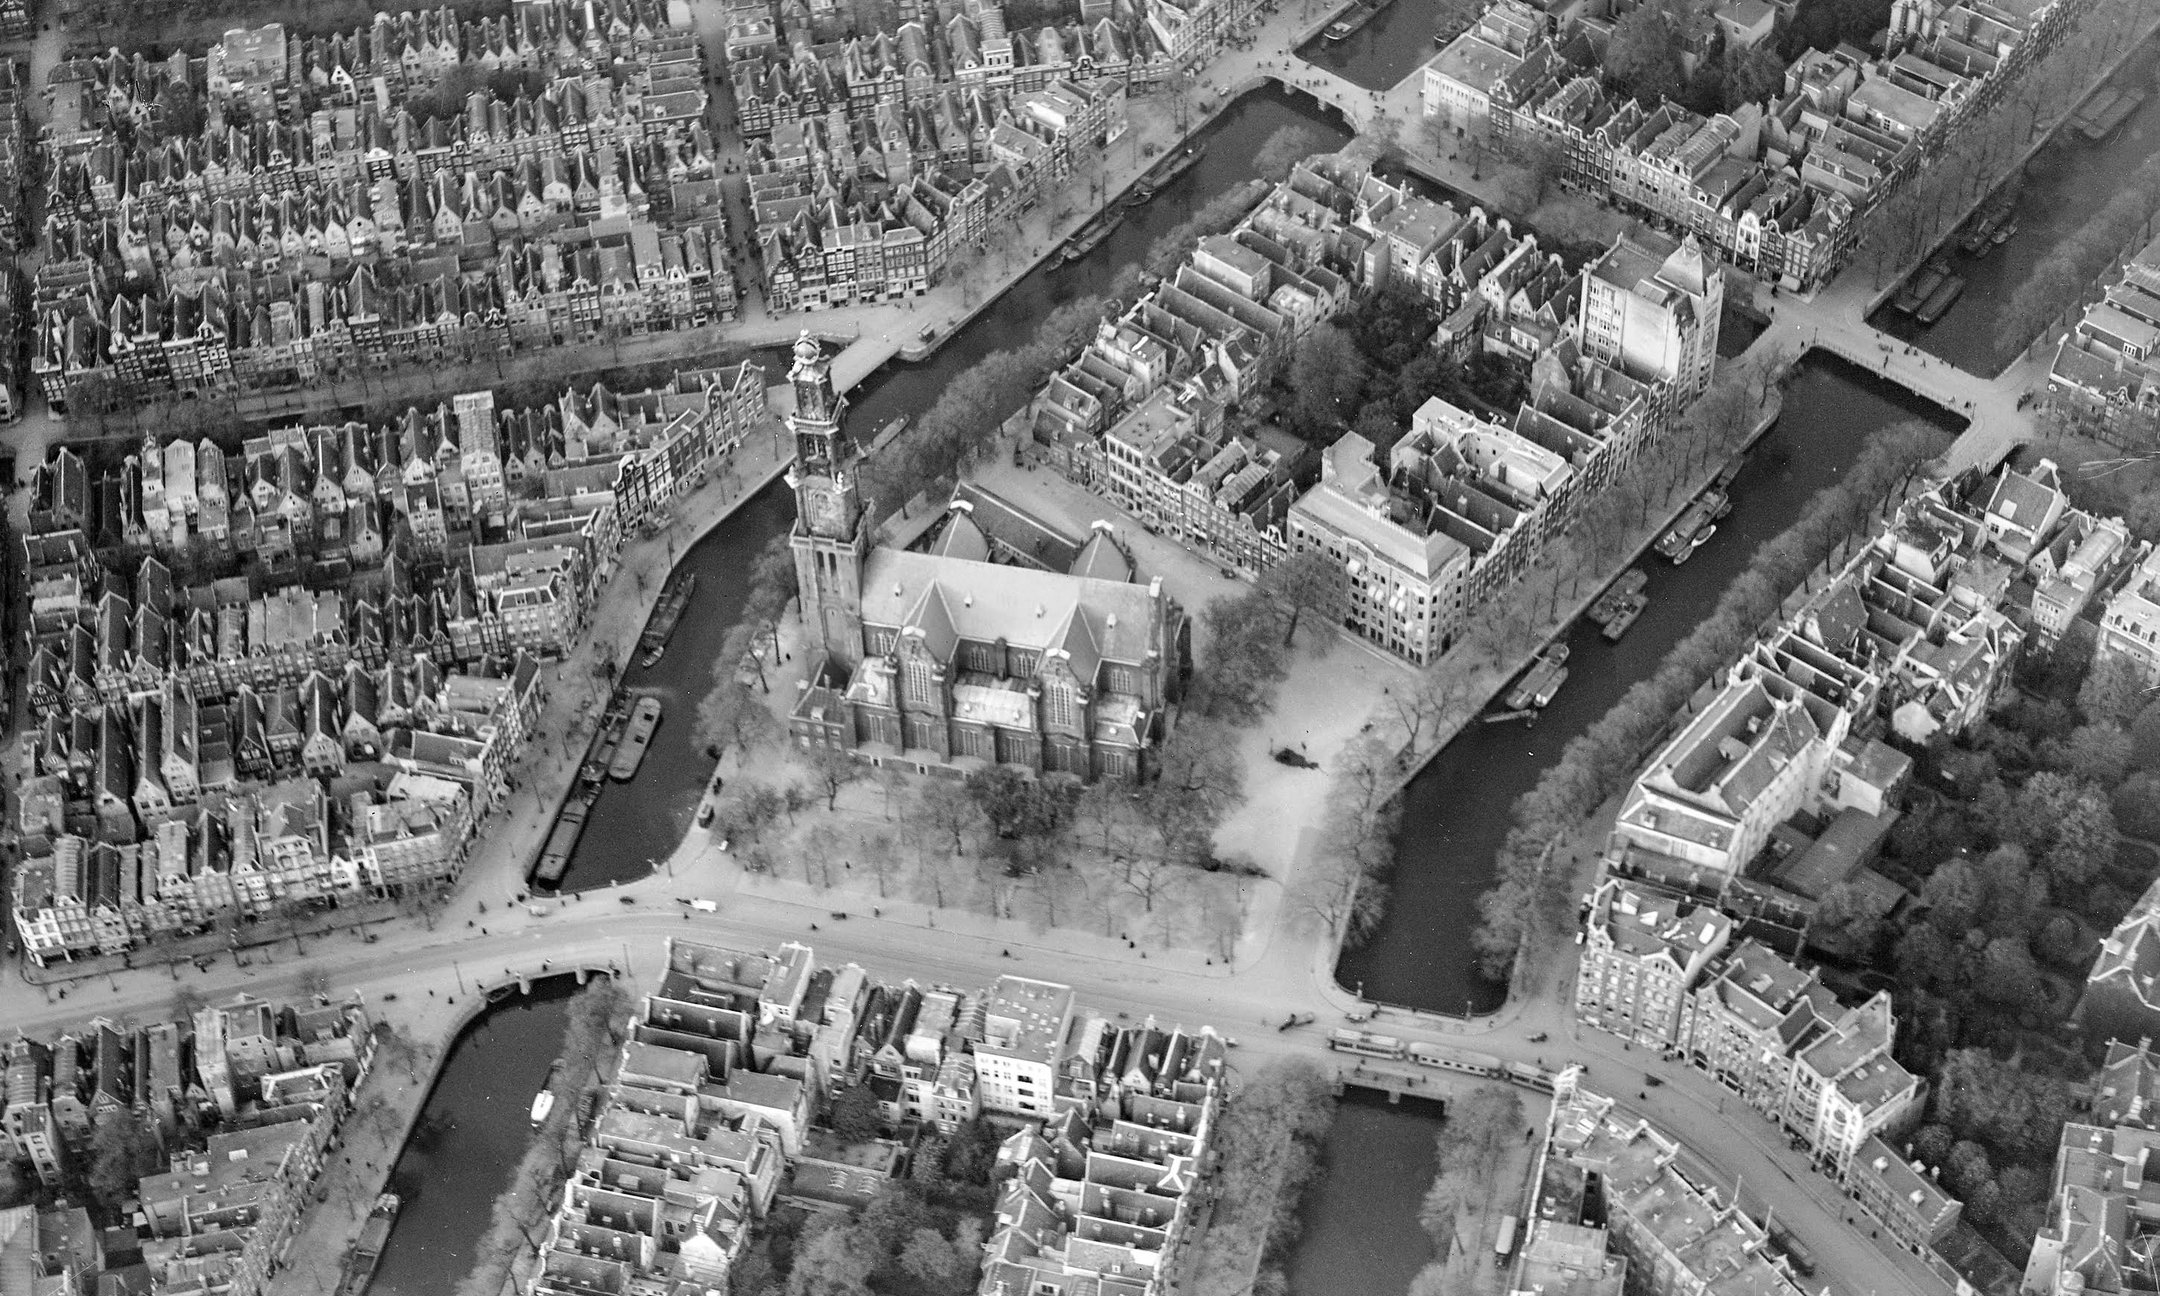 Luftbild von Amsterdam. In der Mitte ist die Westerkerk. Das Gebäude Prinsengracht 263 befindet sich im Block oberhalb des Turms am Wasser.